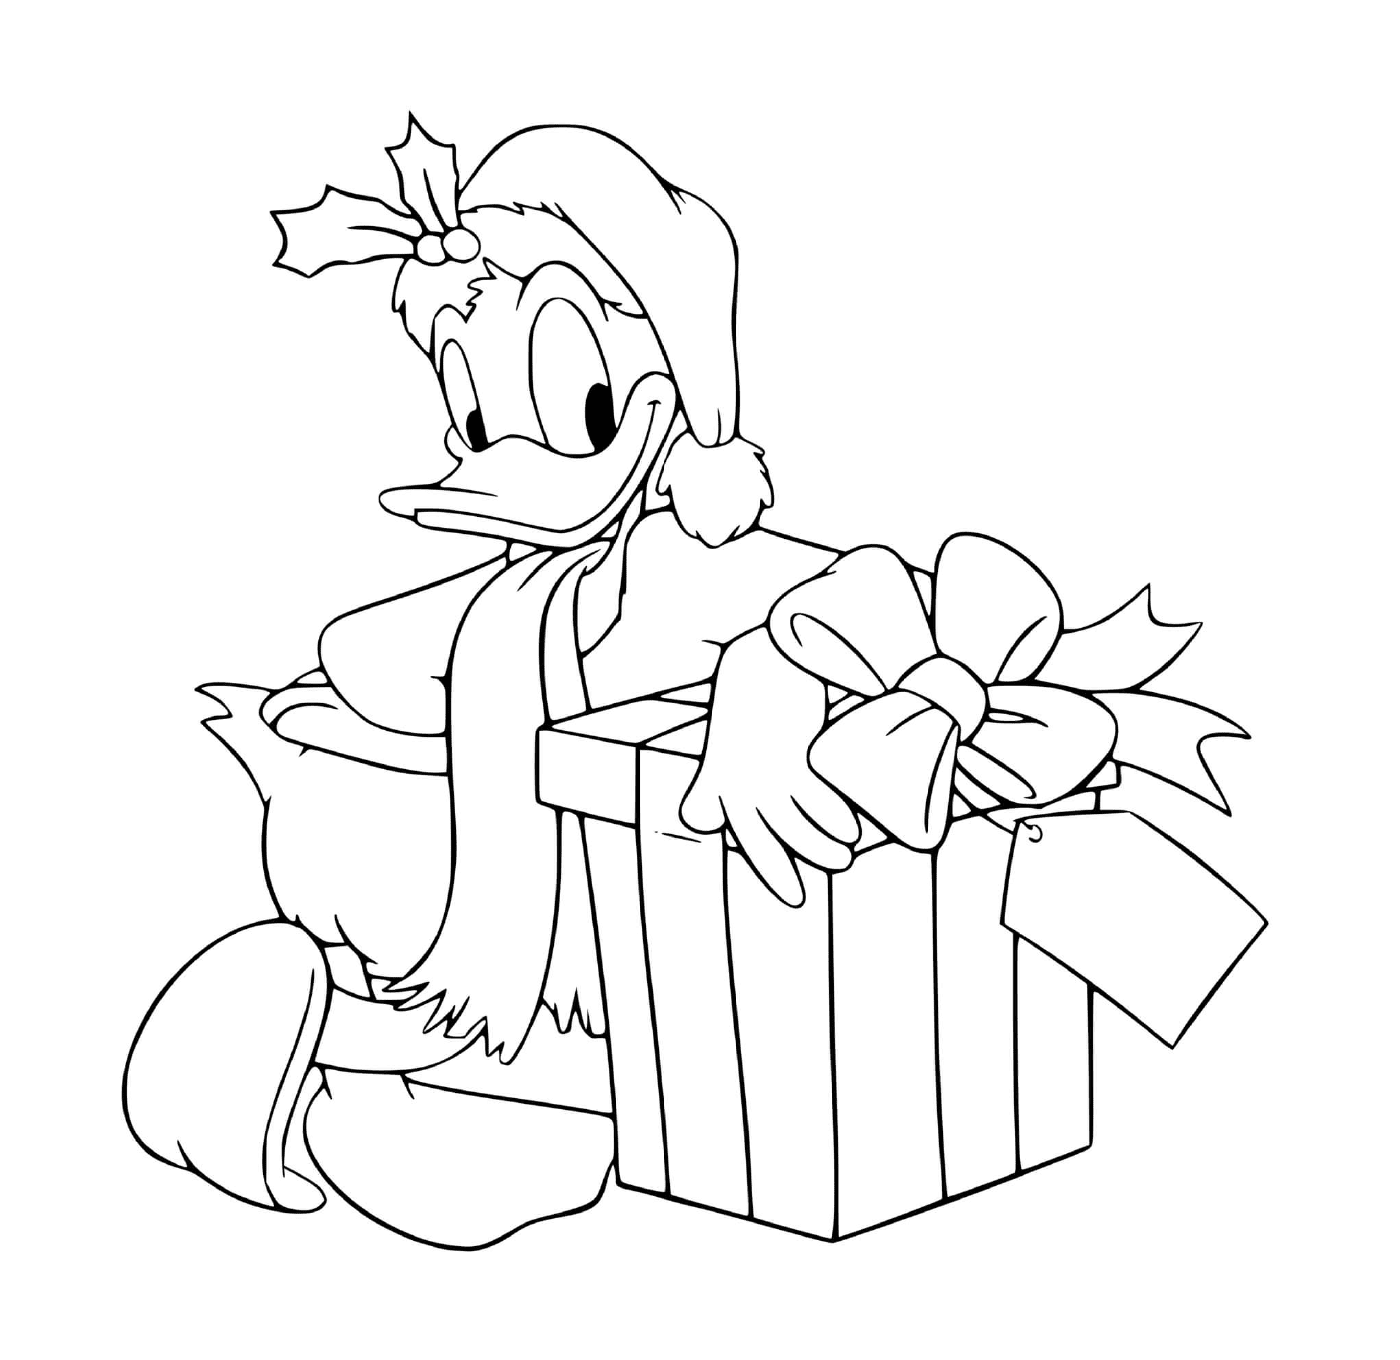   Donald à côté d'un cadeau 